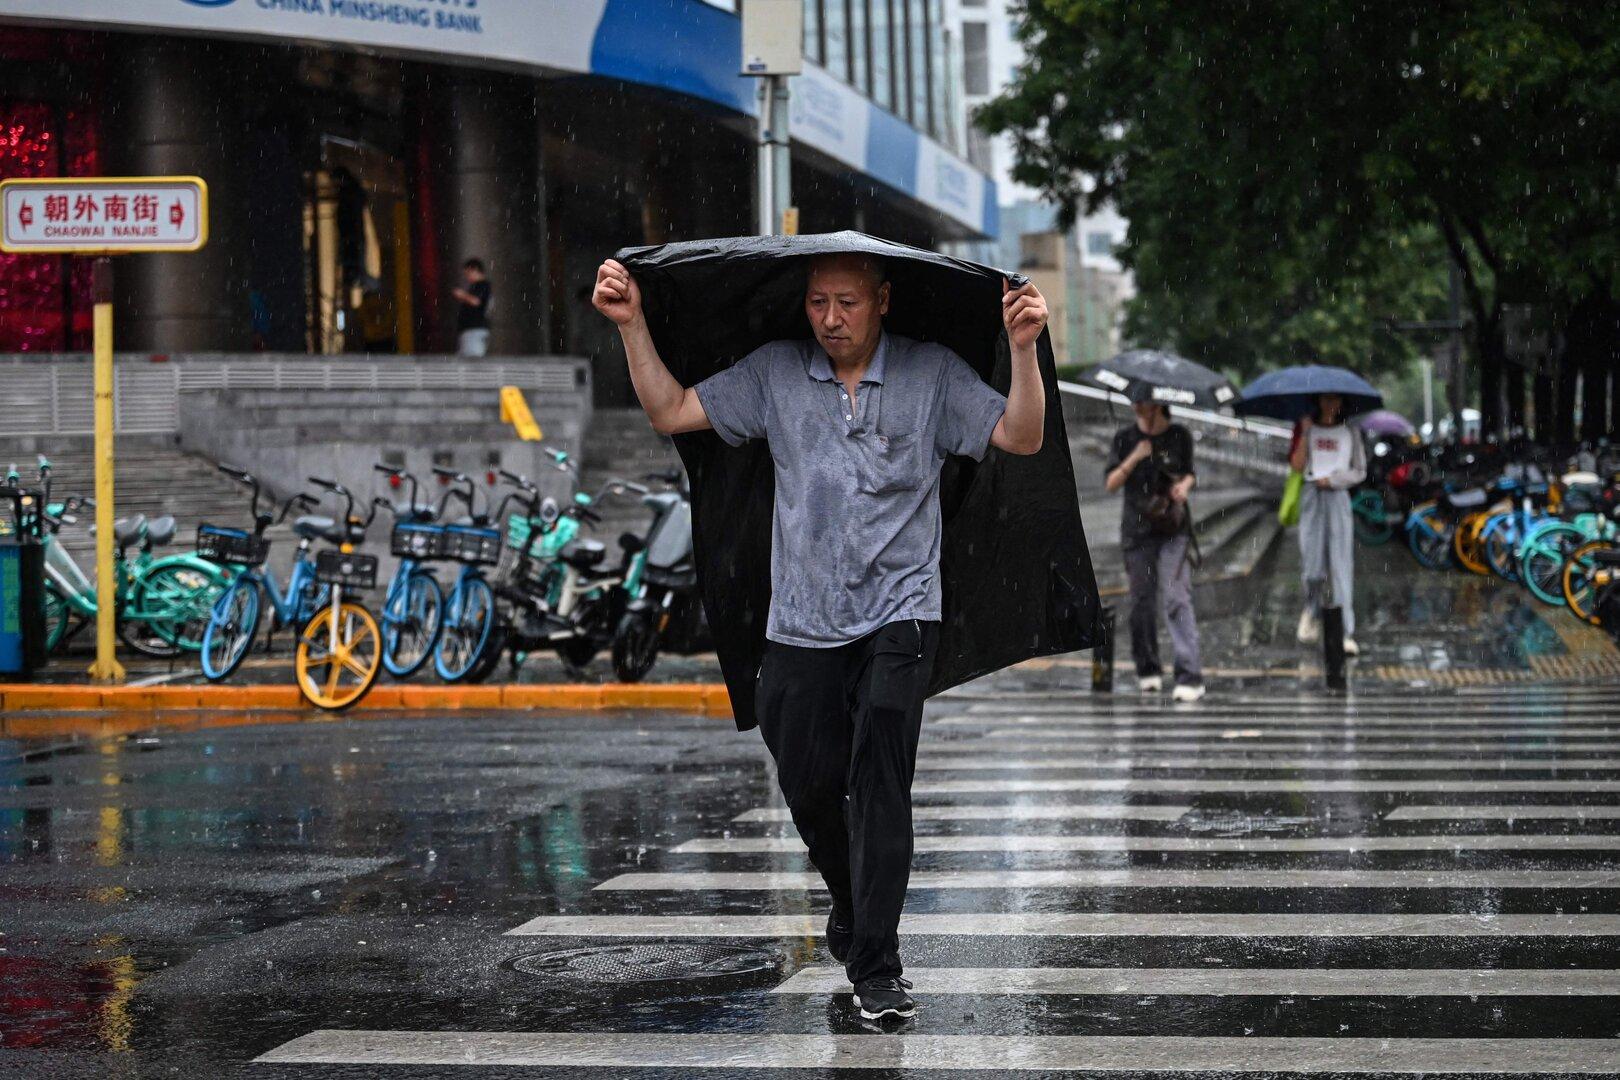 Extremwetter in China: Mindestens fünf Tote nach heftigen Regenfällen